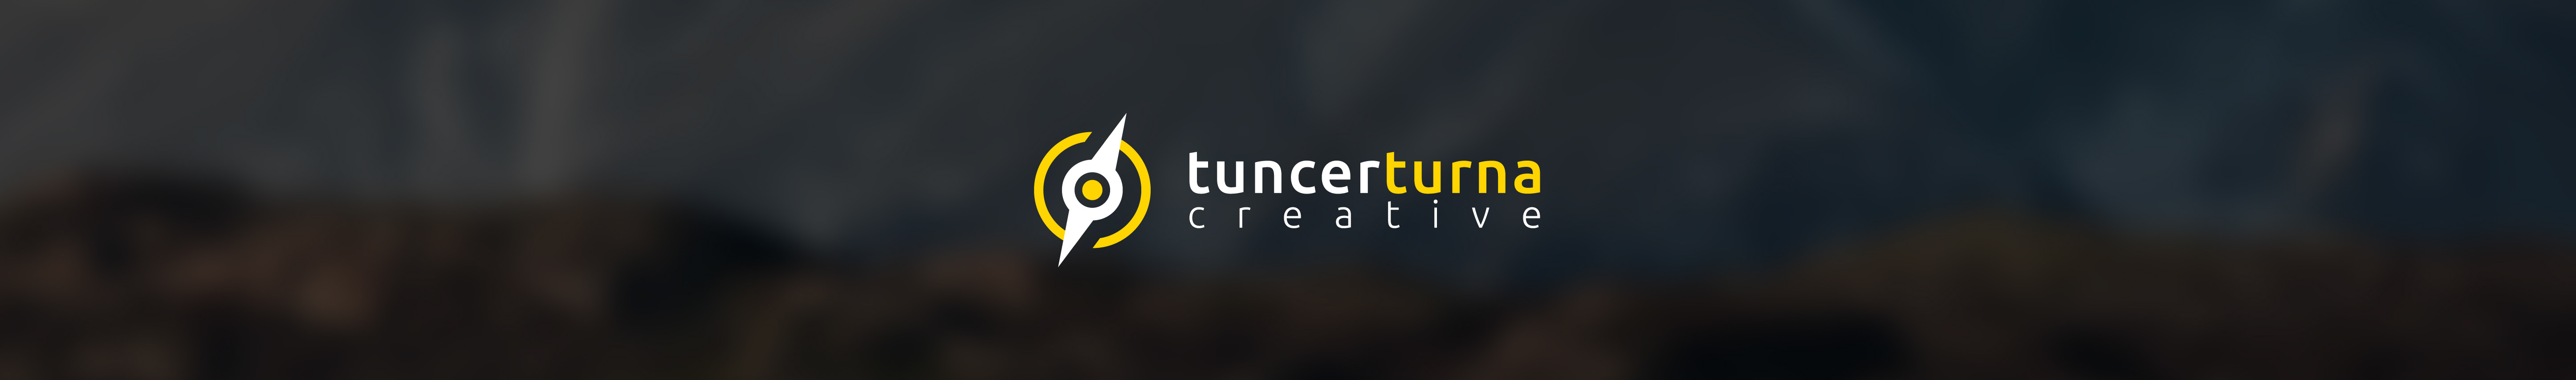 Tuncer Turna ✔ profil başlığı